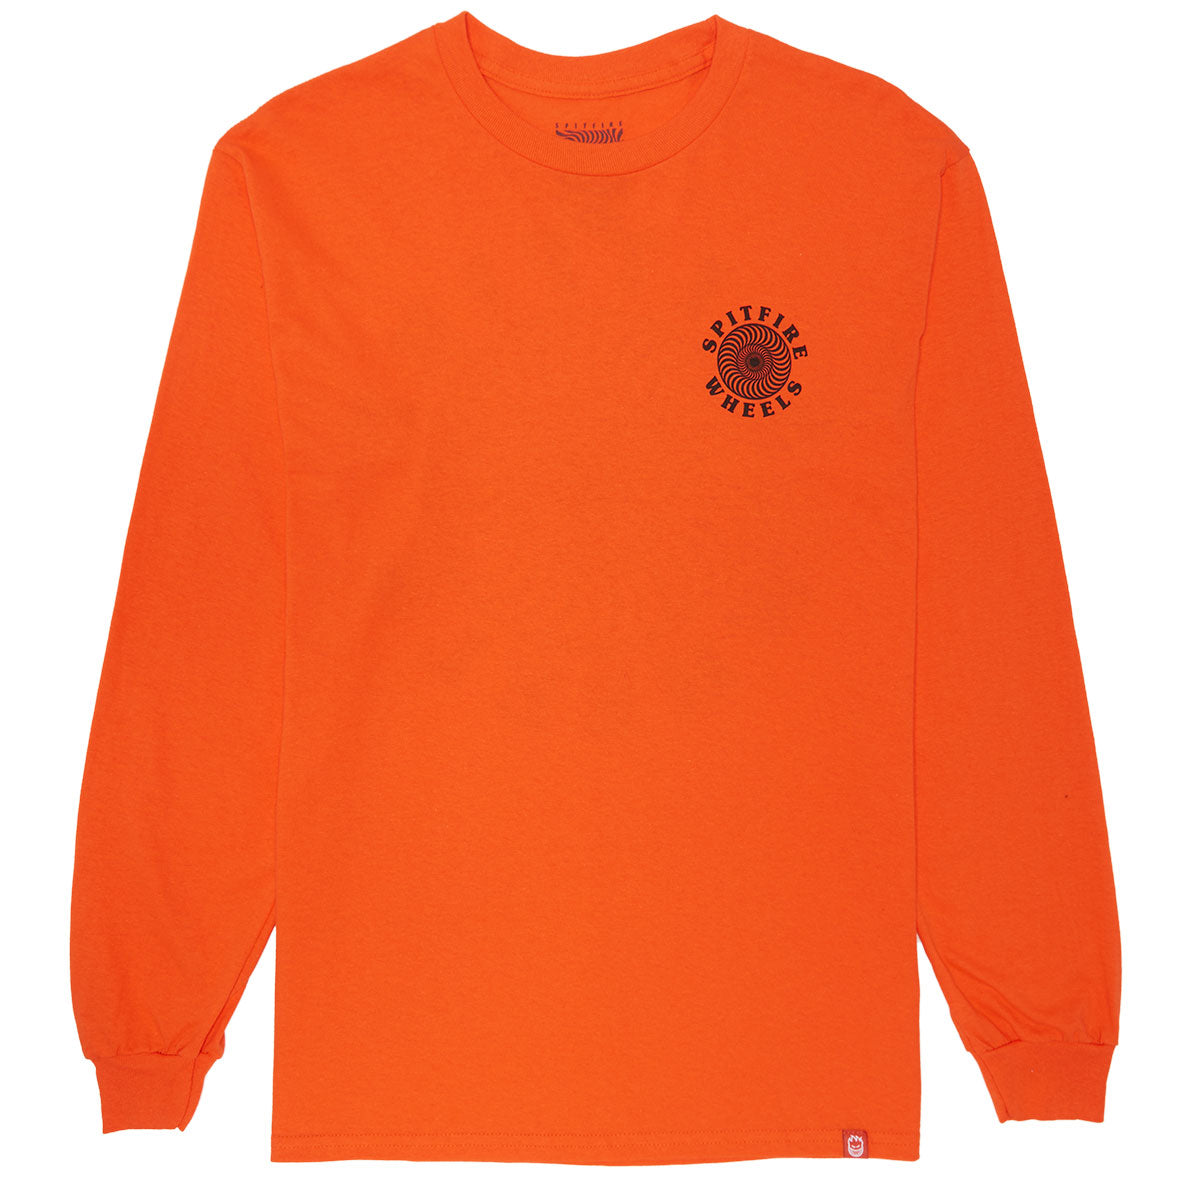 Spitfire Og Classic Fill Long Sleeve T-Shirt - Orange/Black/White image 2